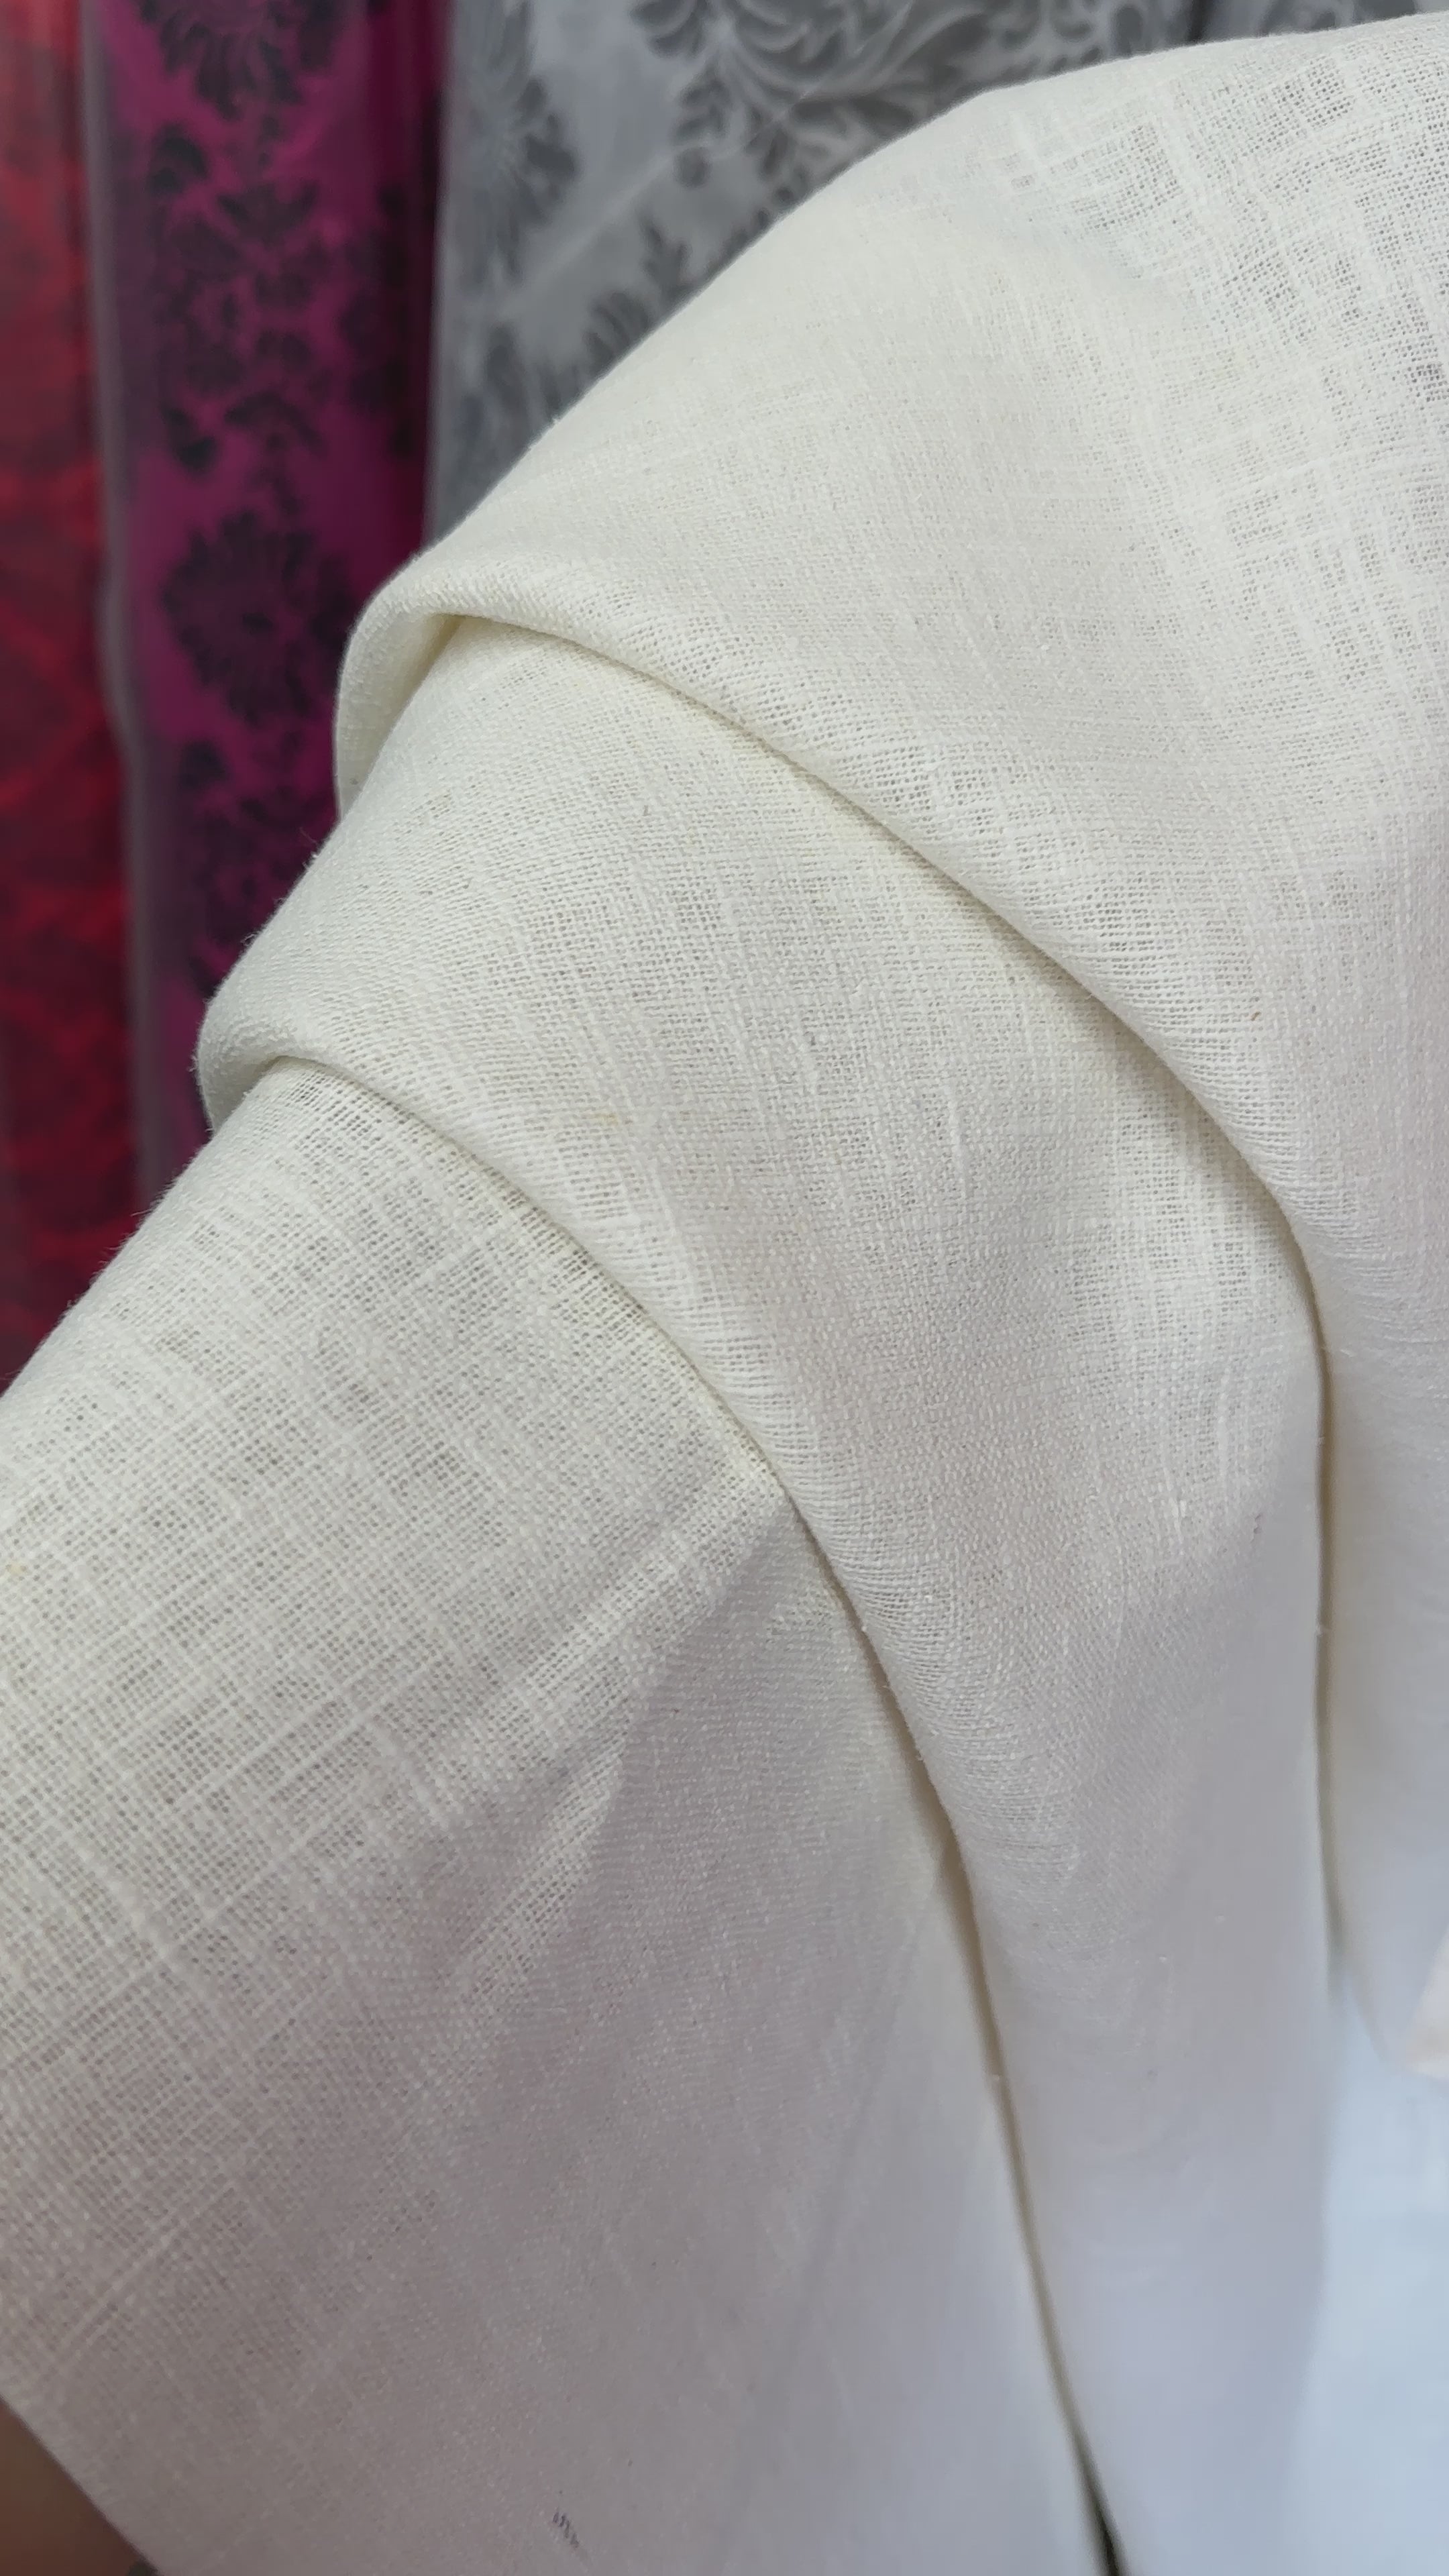 Eggshell Natural Linen, white linen, off white linen, textured linen, linen for woman, linen for shirts, linen for chair cover, premium linen, linen in low price, kikitextile linen